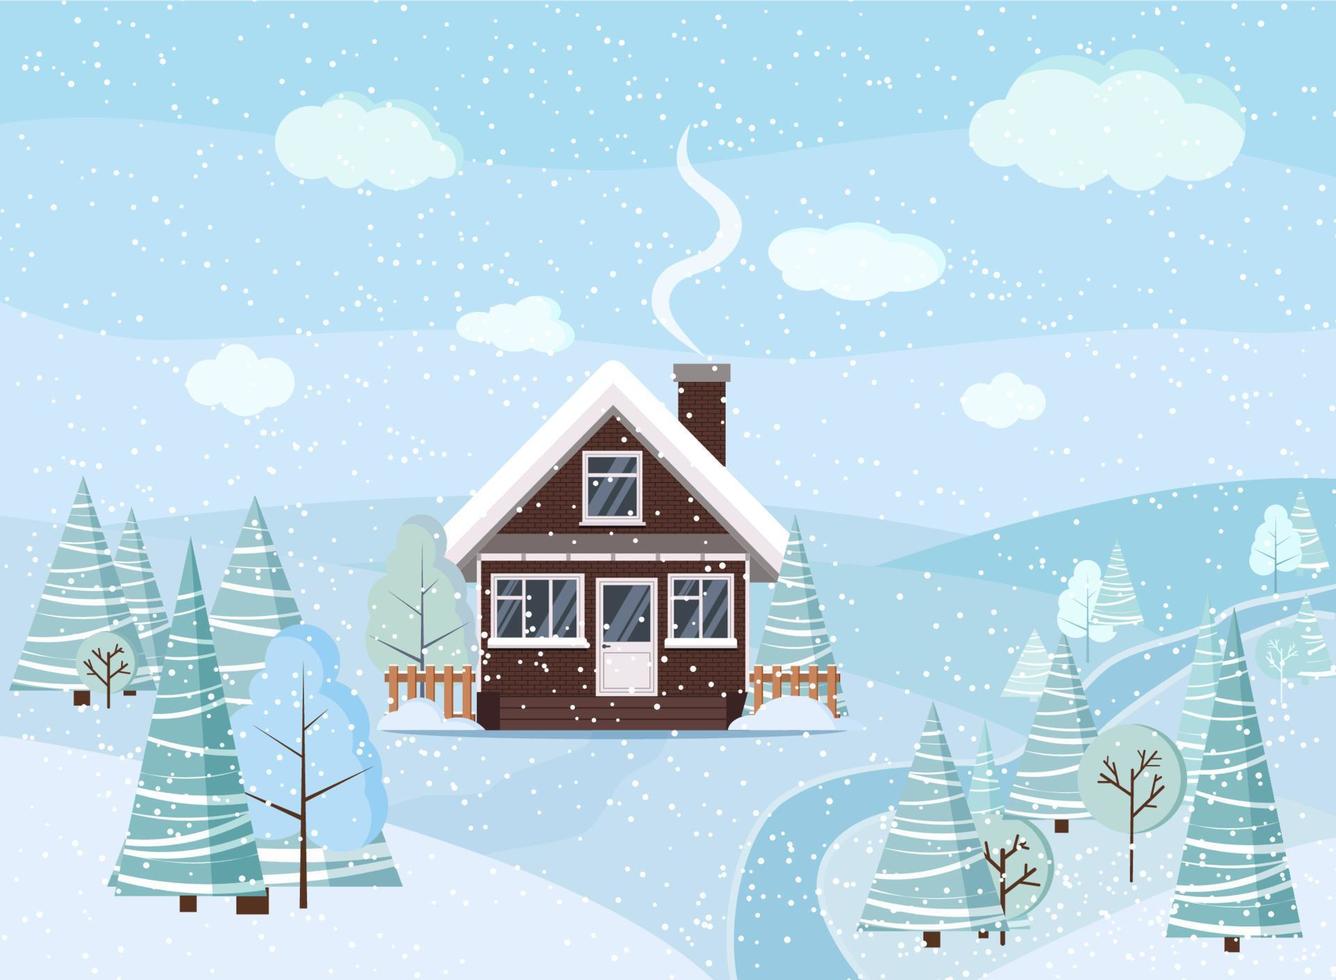 vinter- snöig landskap scen med tegel hus, vinter- träd, granar, moln, flod, snö, fält i tecknad serie platt stil, jul vektor bakgrund illustration.